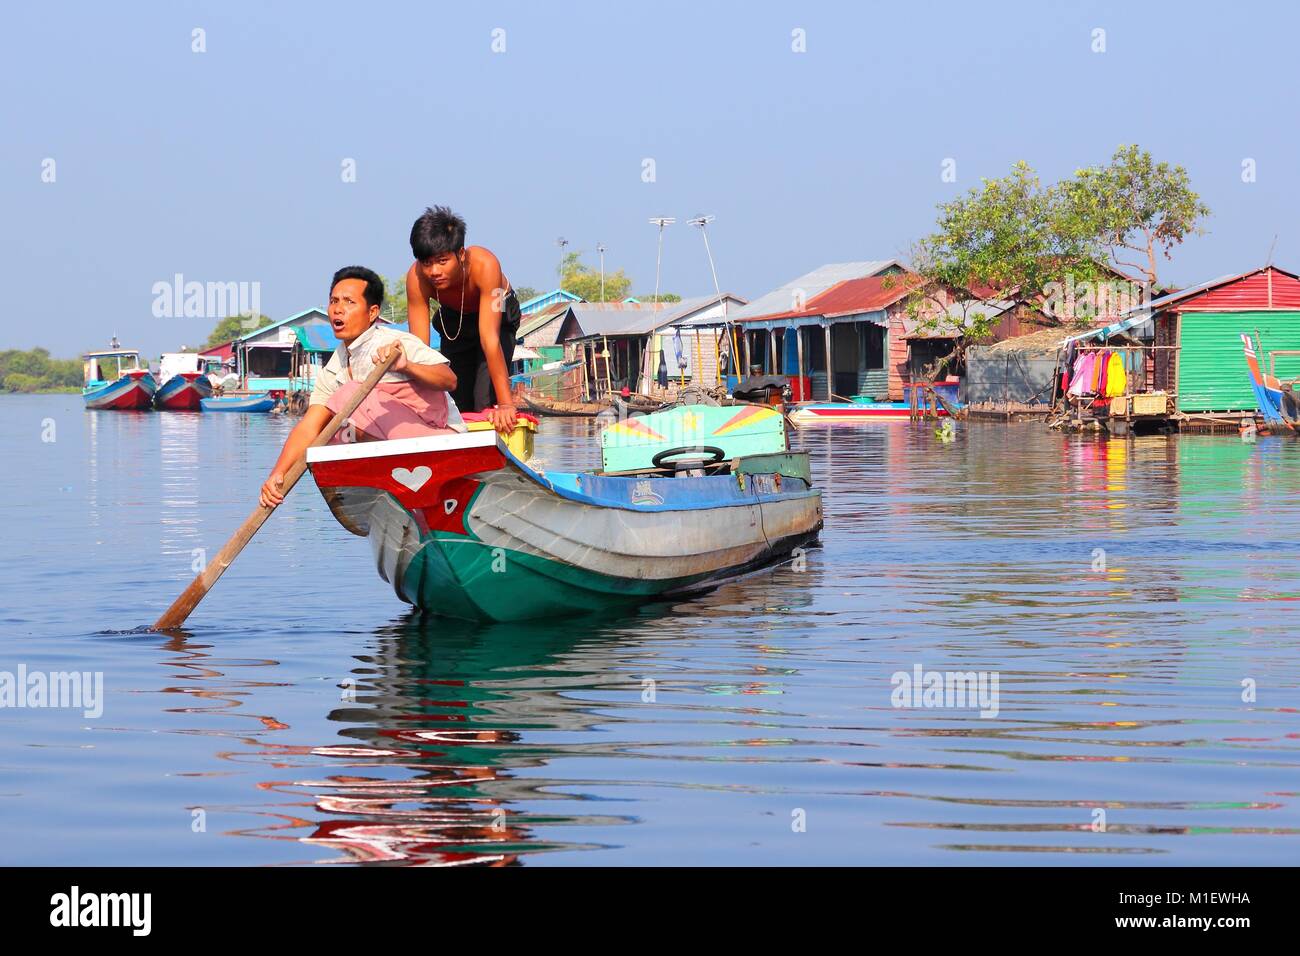 Il Tonle Sap, Cambogia - Dicembre 11, 2013: persone non identificate hanno una barca in villaggio galleggiante sul lago Tonle Sap. È il più grande lago del sud-est come Foto Stock